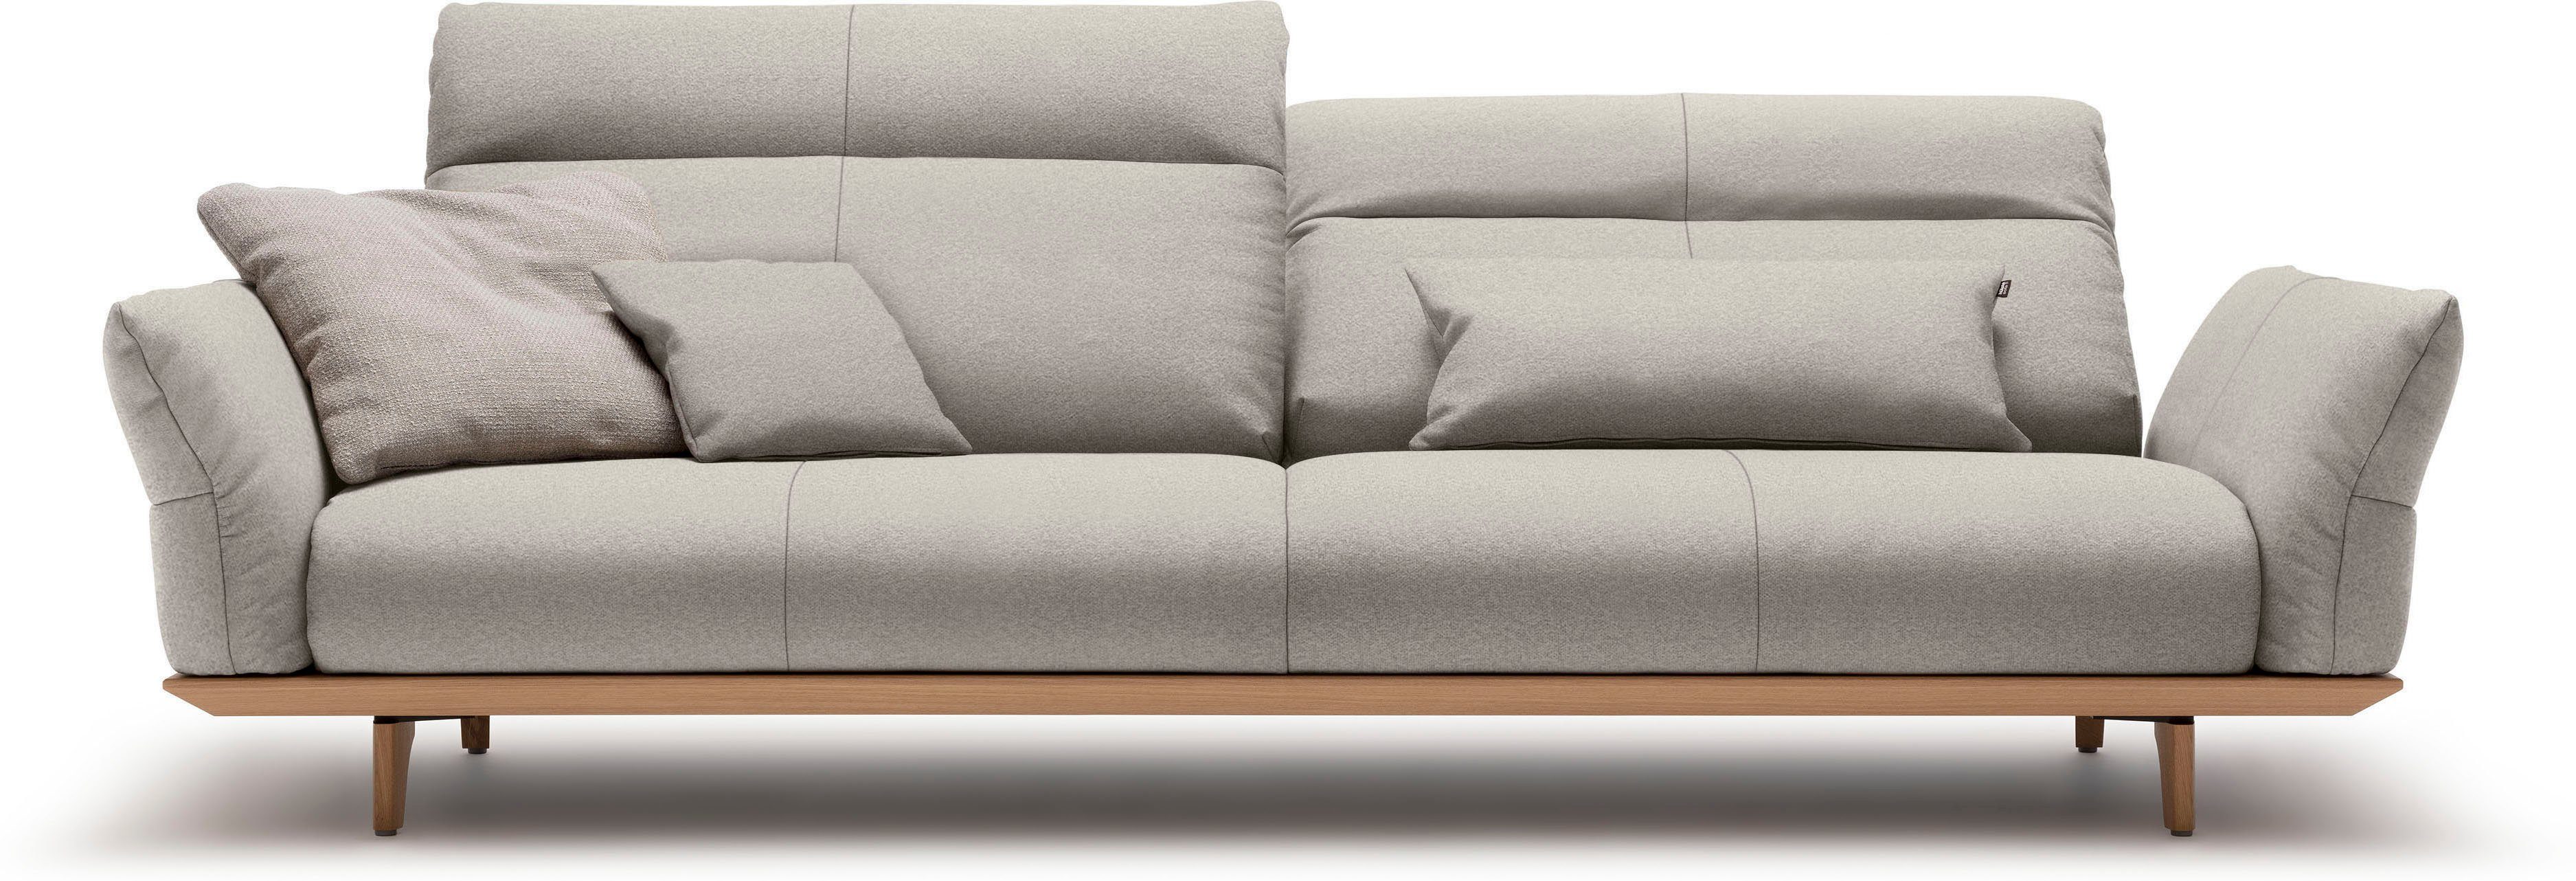 huelsta sofa 4-zitsbank hs.460 onderstel in eiken, poten in natuurlijk eiken, breedte 248 cm grijs